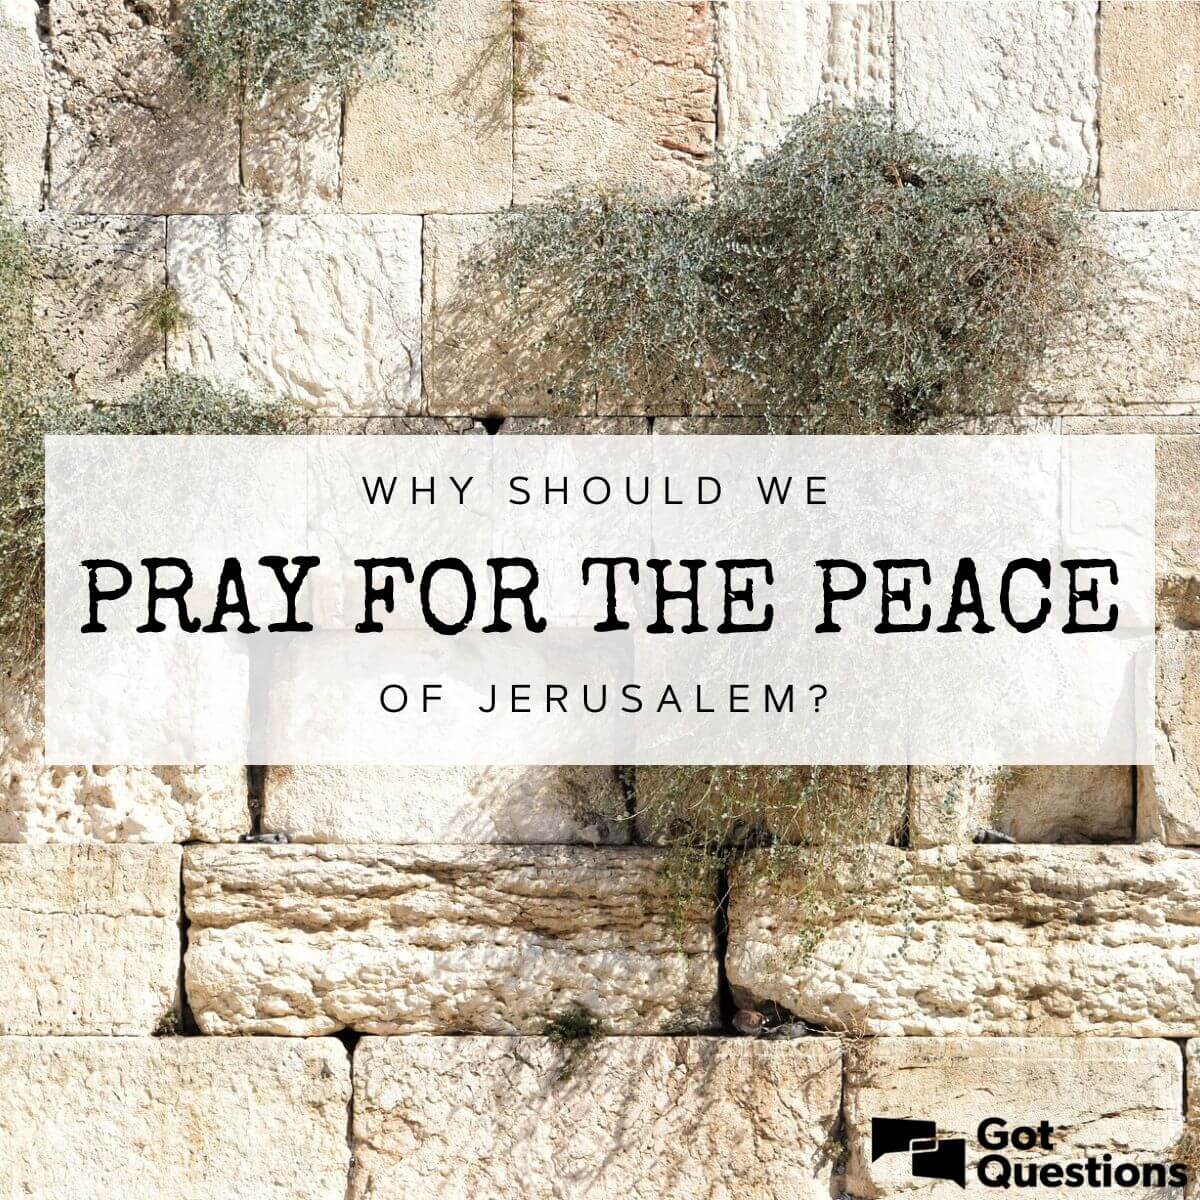 THEY SHALL PROSPER THAT LOVE JERUSALEM Shalom Y'Israel! We pray